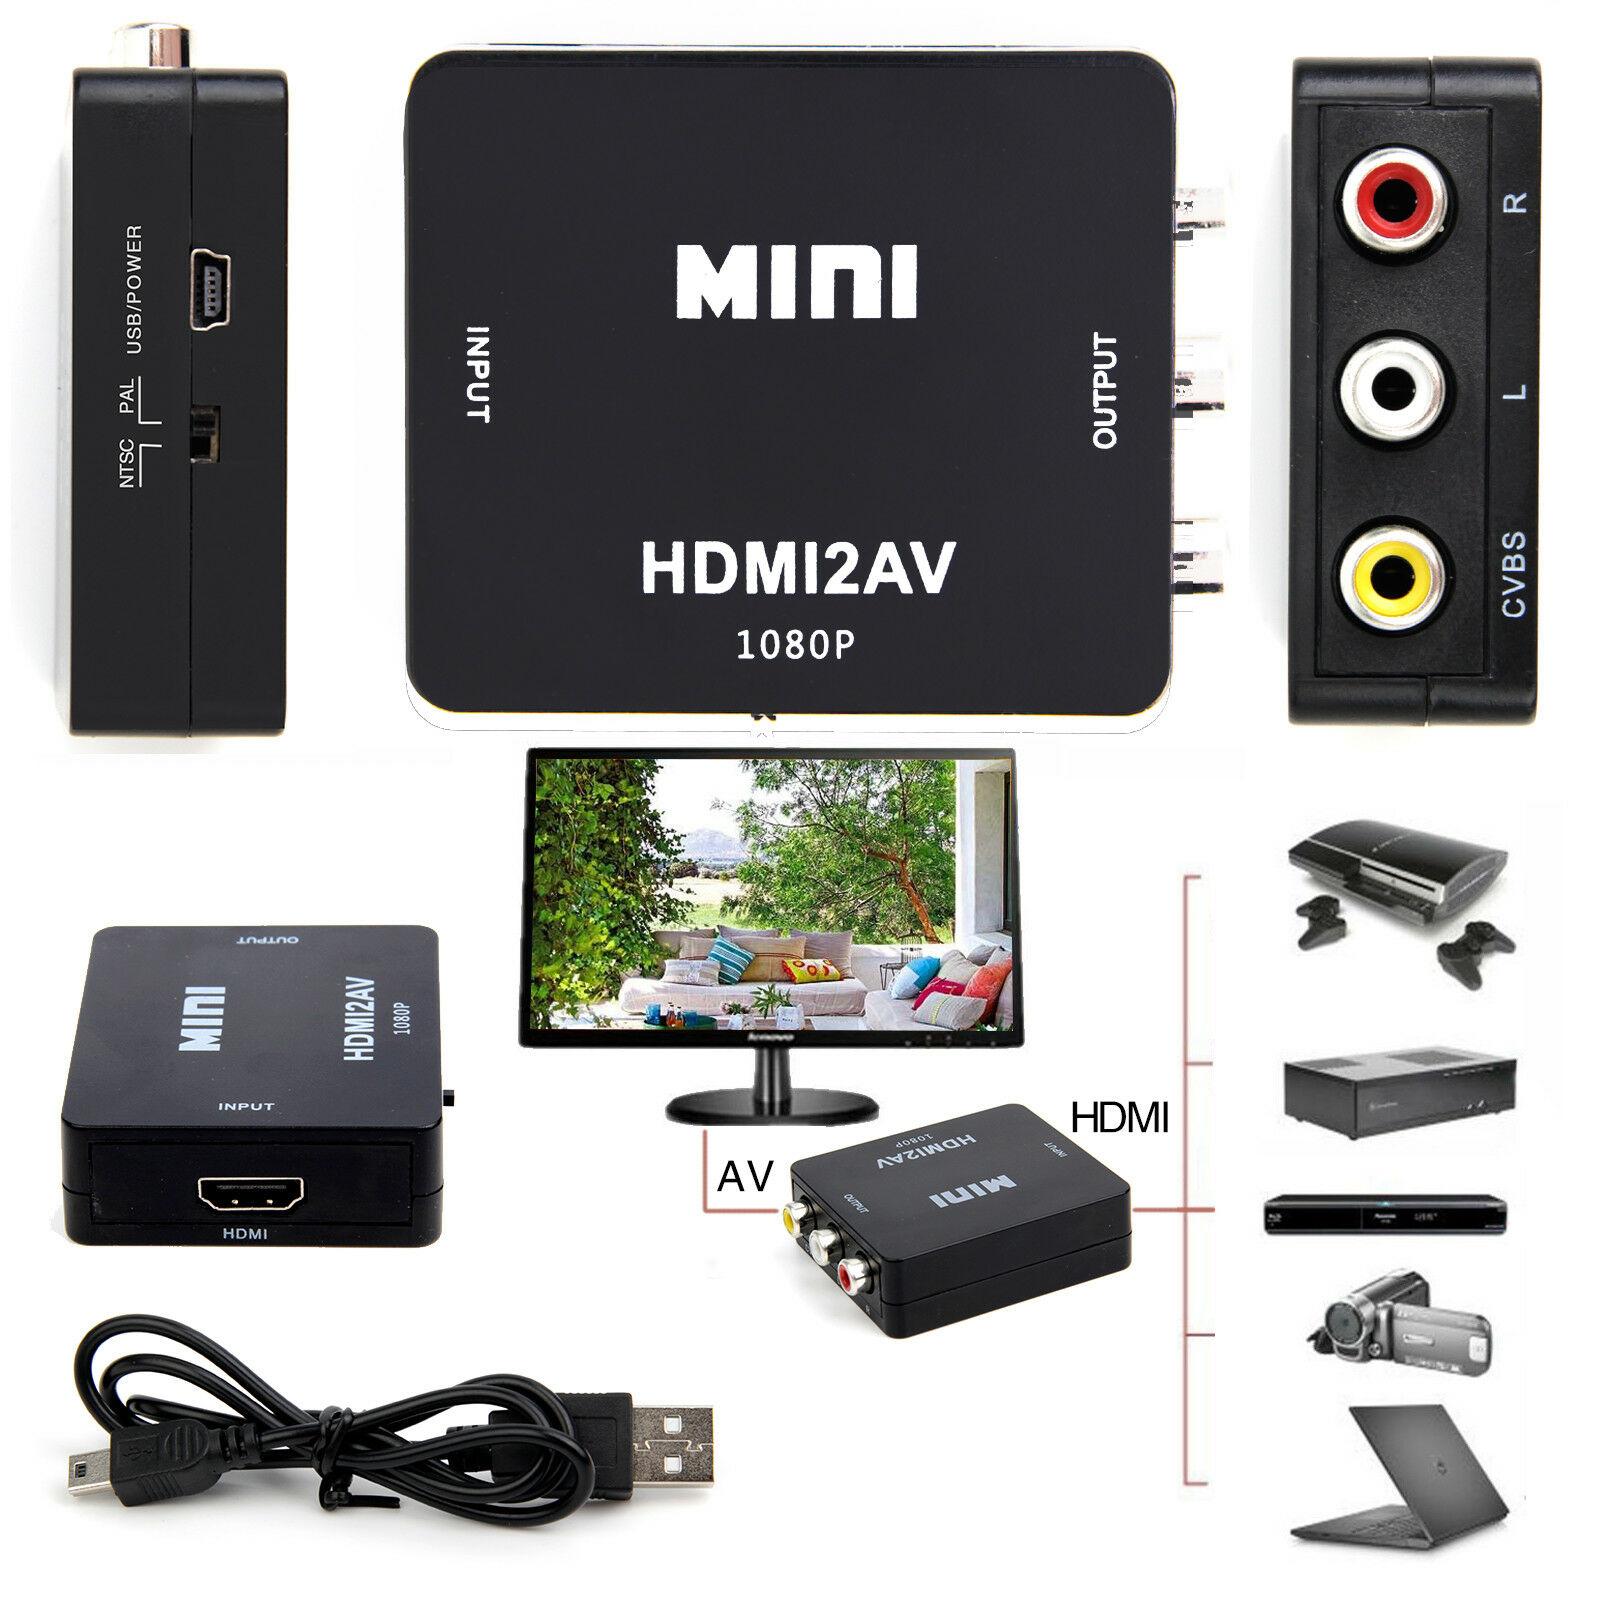 HDMI to AV Converter (1080P) แปลงสัญญาณภาพและเสียงจาก HDMI เป็น AV